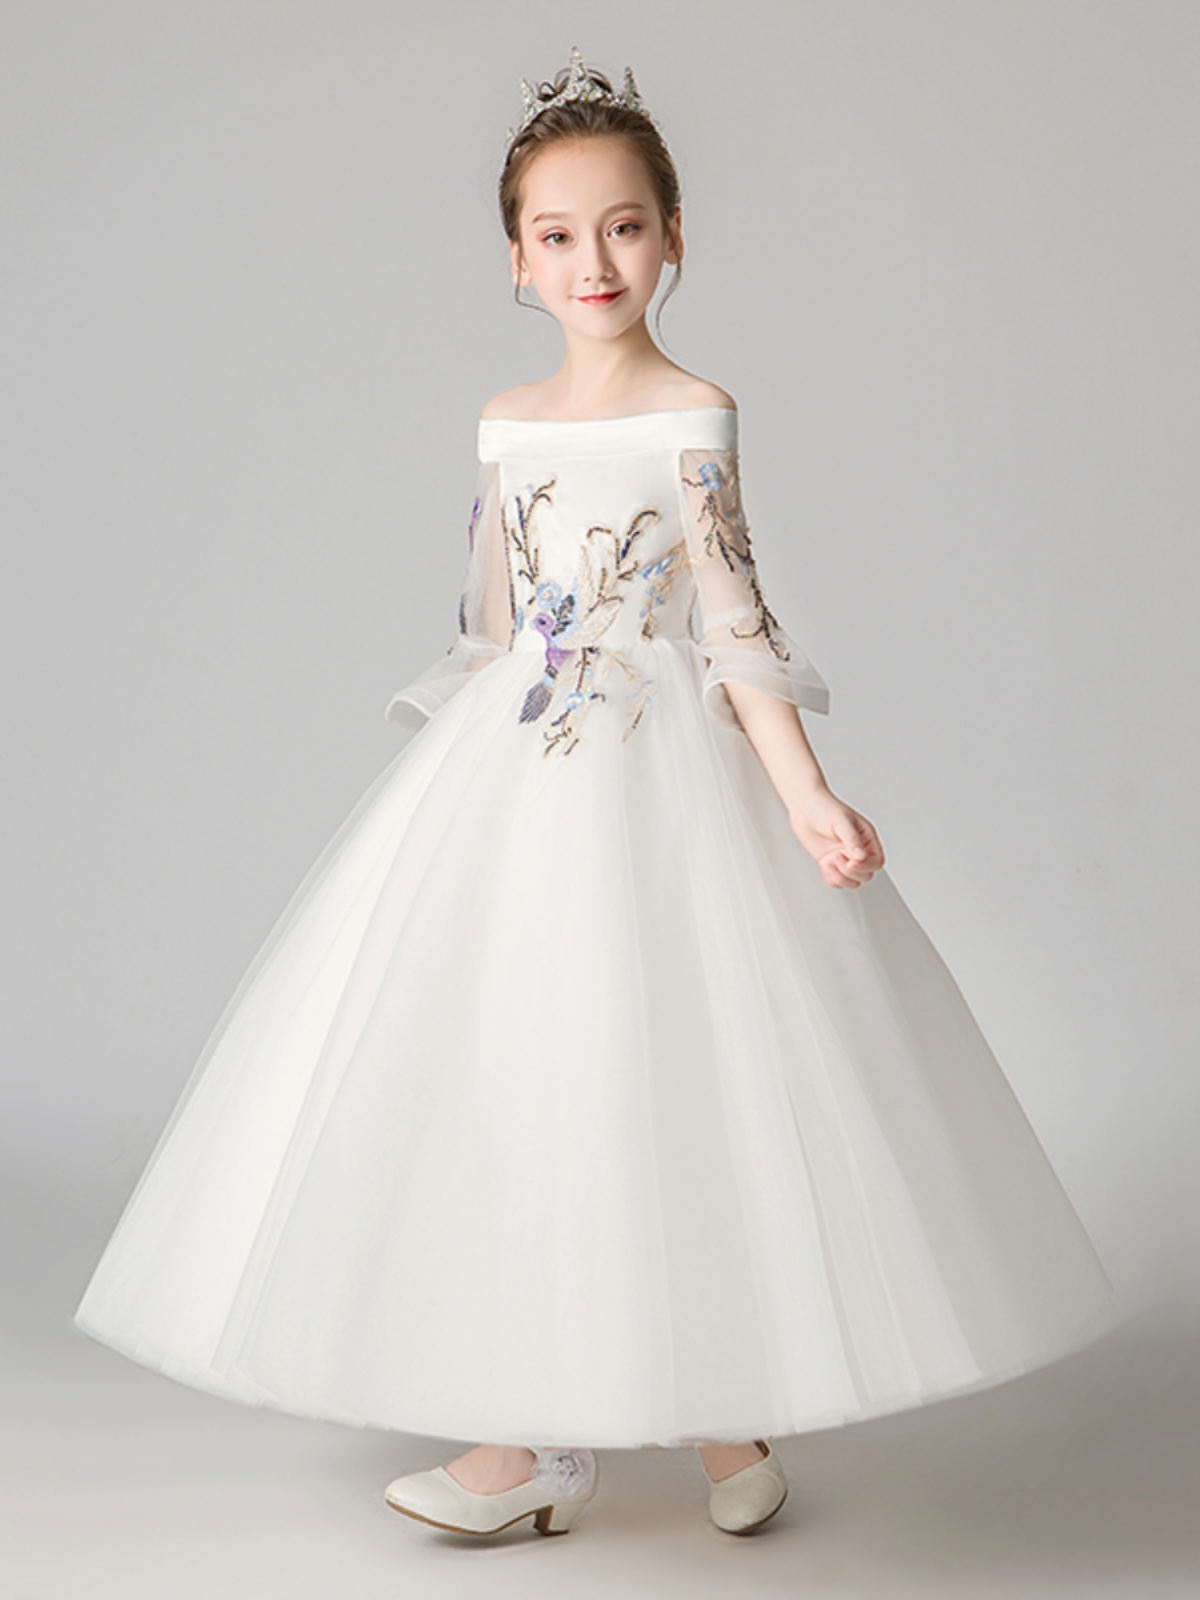 新品儿童礼服公主裙女童白色一字肩晚宴走秀花童主持人钢琴演出服